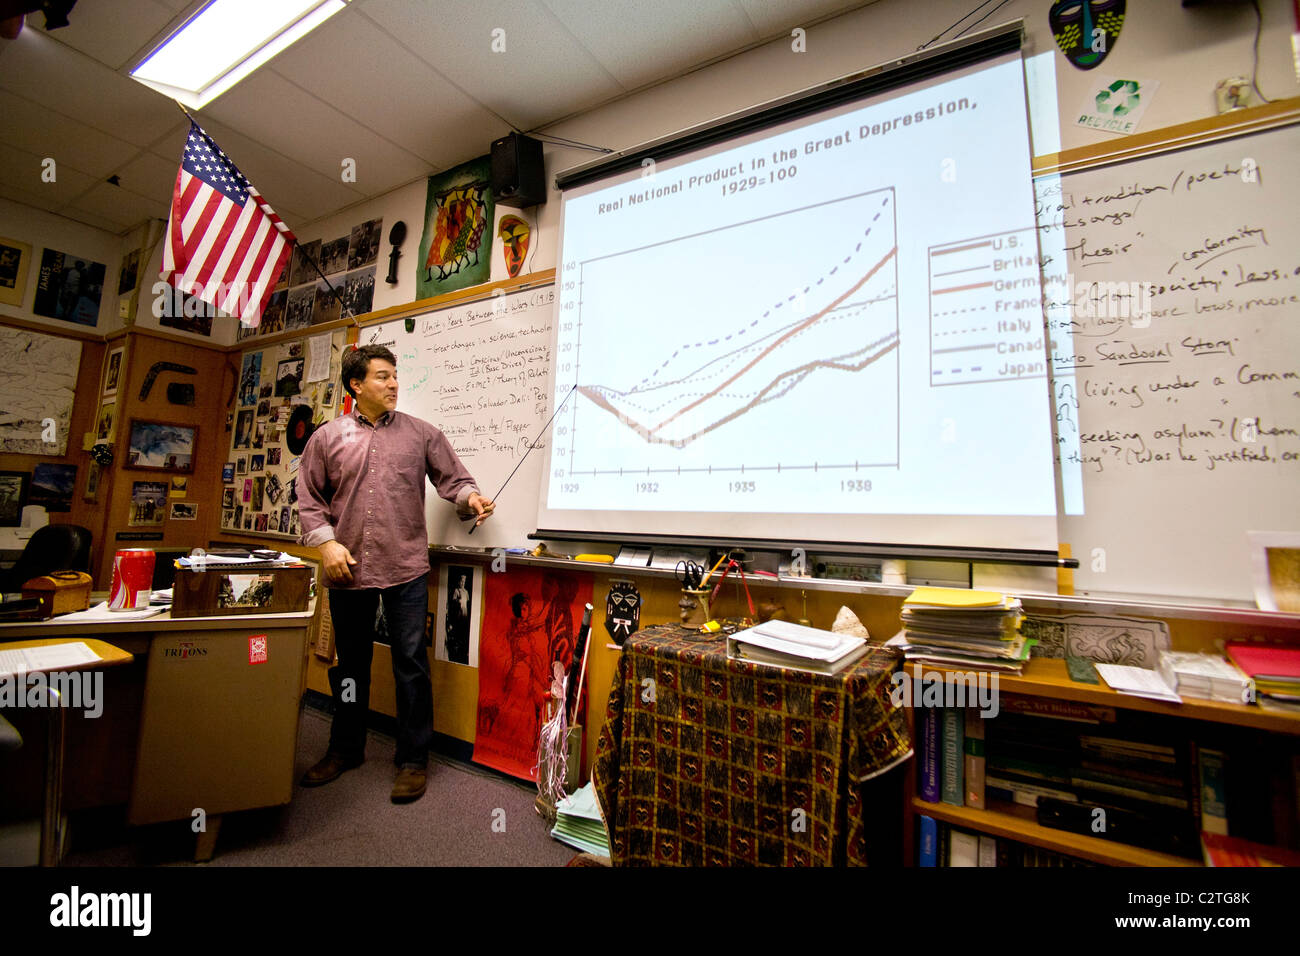 Un insegnante di storia utilizza un display a cristalli liquidi (LCD) proiettore quando parlando alla sua classe su la Grande Depressione. Foto Stock